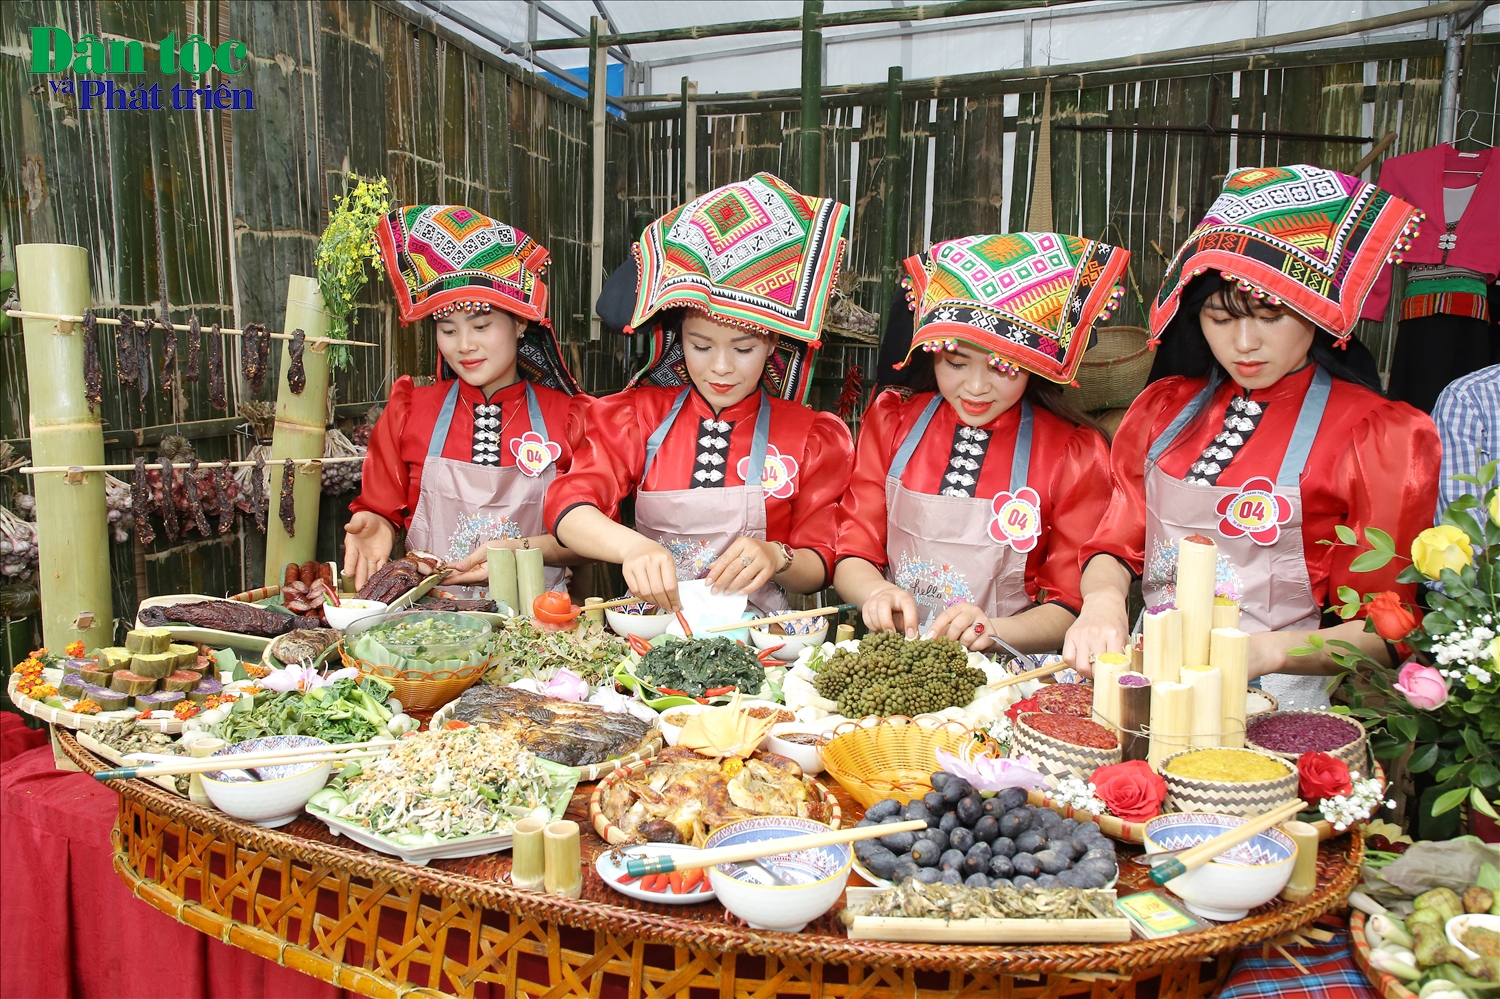 Cùng với nhiều phần thi khác, phần thi trình bày và thuyết trình ẩm thực đã tạo nên một sức hấp dẫn về văn hóa ẩm thực đặc trưng của các dân tộc đang sinh sống trên địa bàn Tp. Sơn La